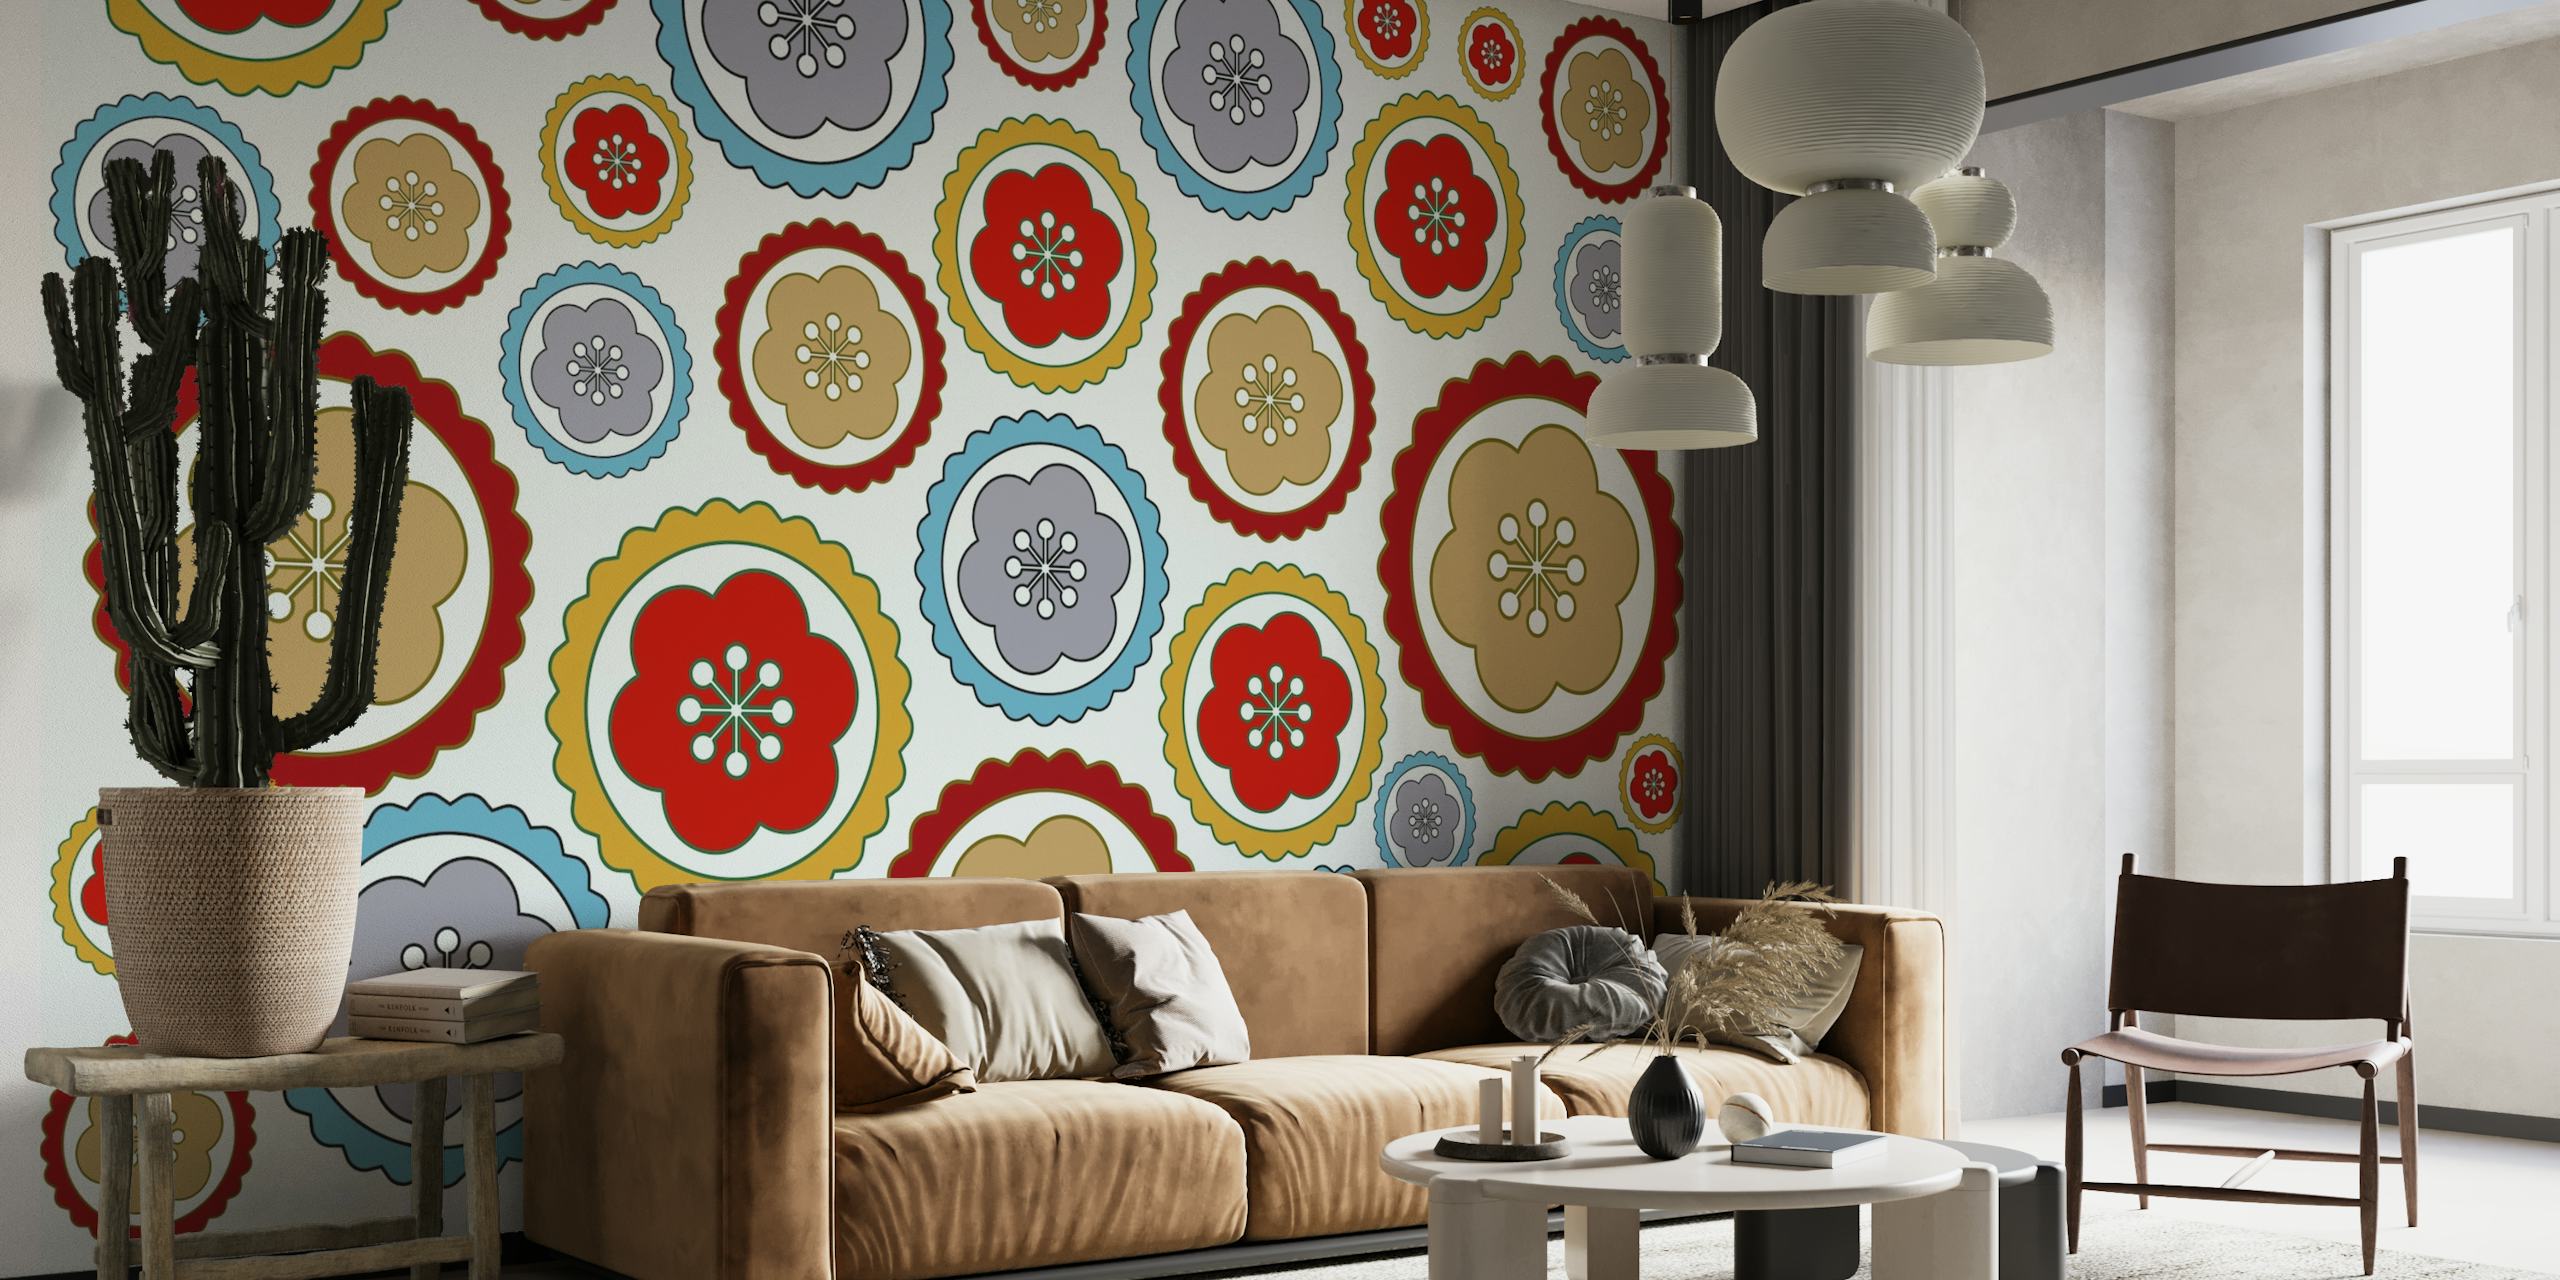 Farverigt retro-stil tusindfryd mønster vægmaleri til et vintage indretningstema